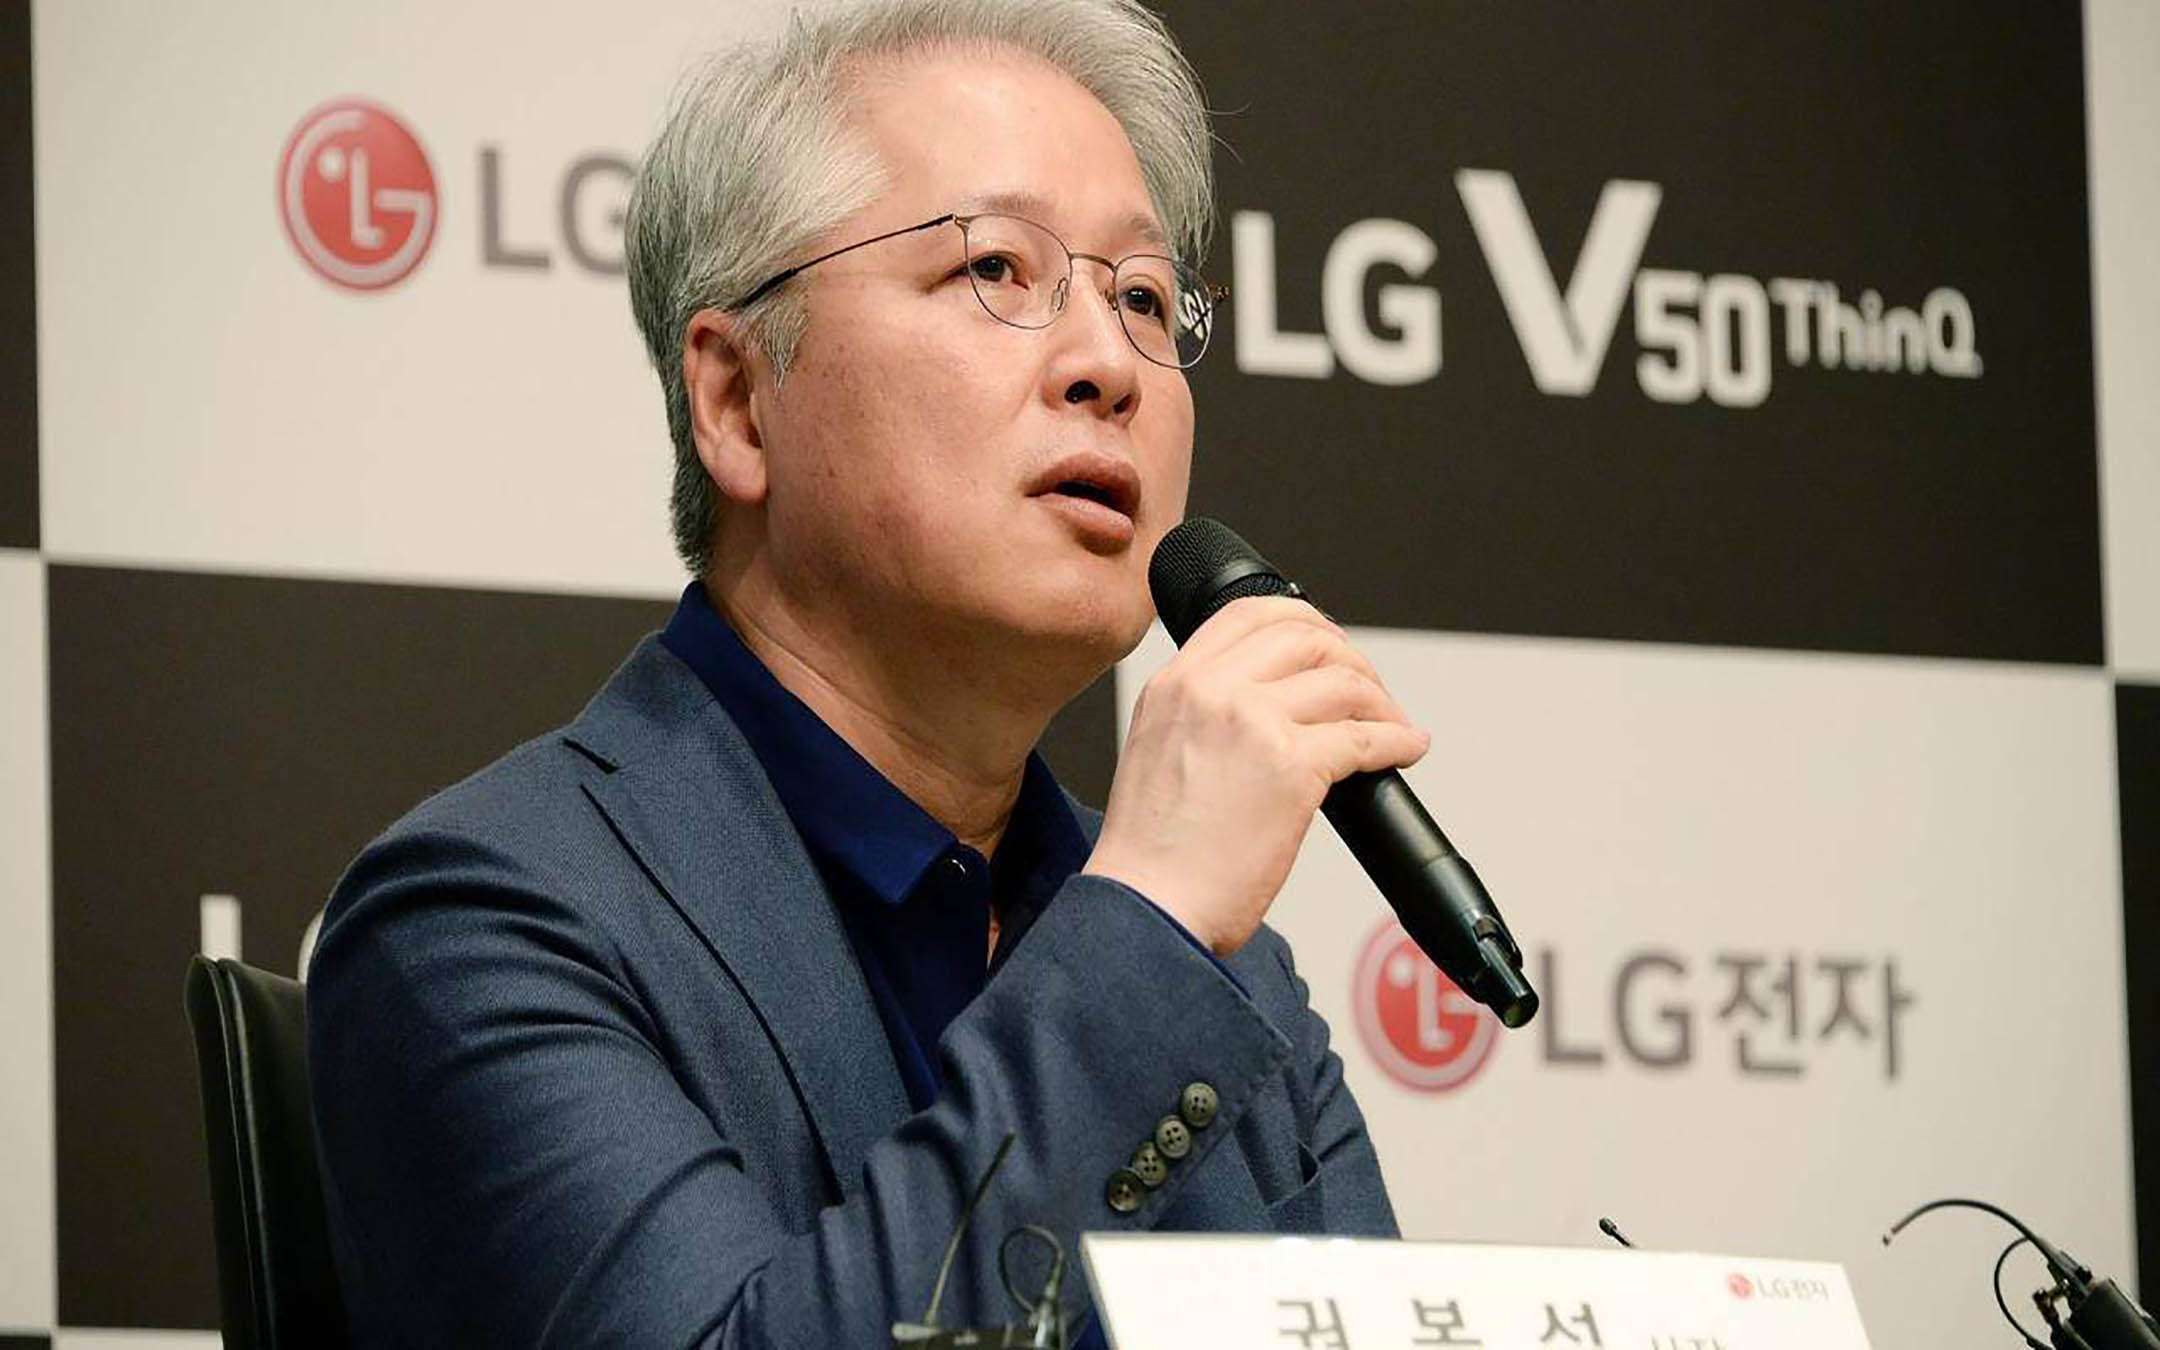 LG V50 ThinQ 5G e LG G8 ThinQ: lancio al MWC 2019